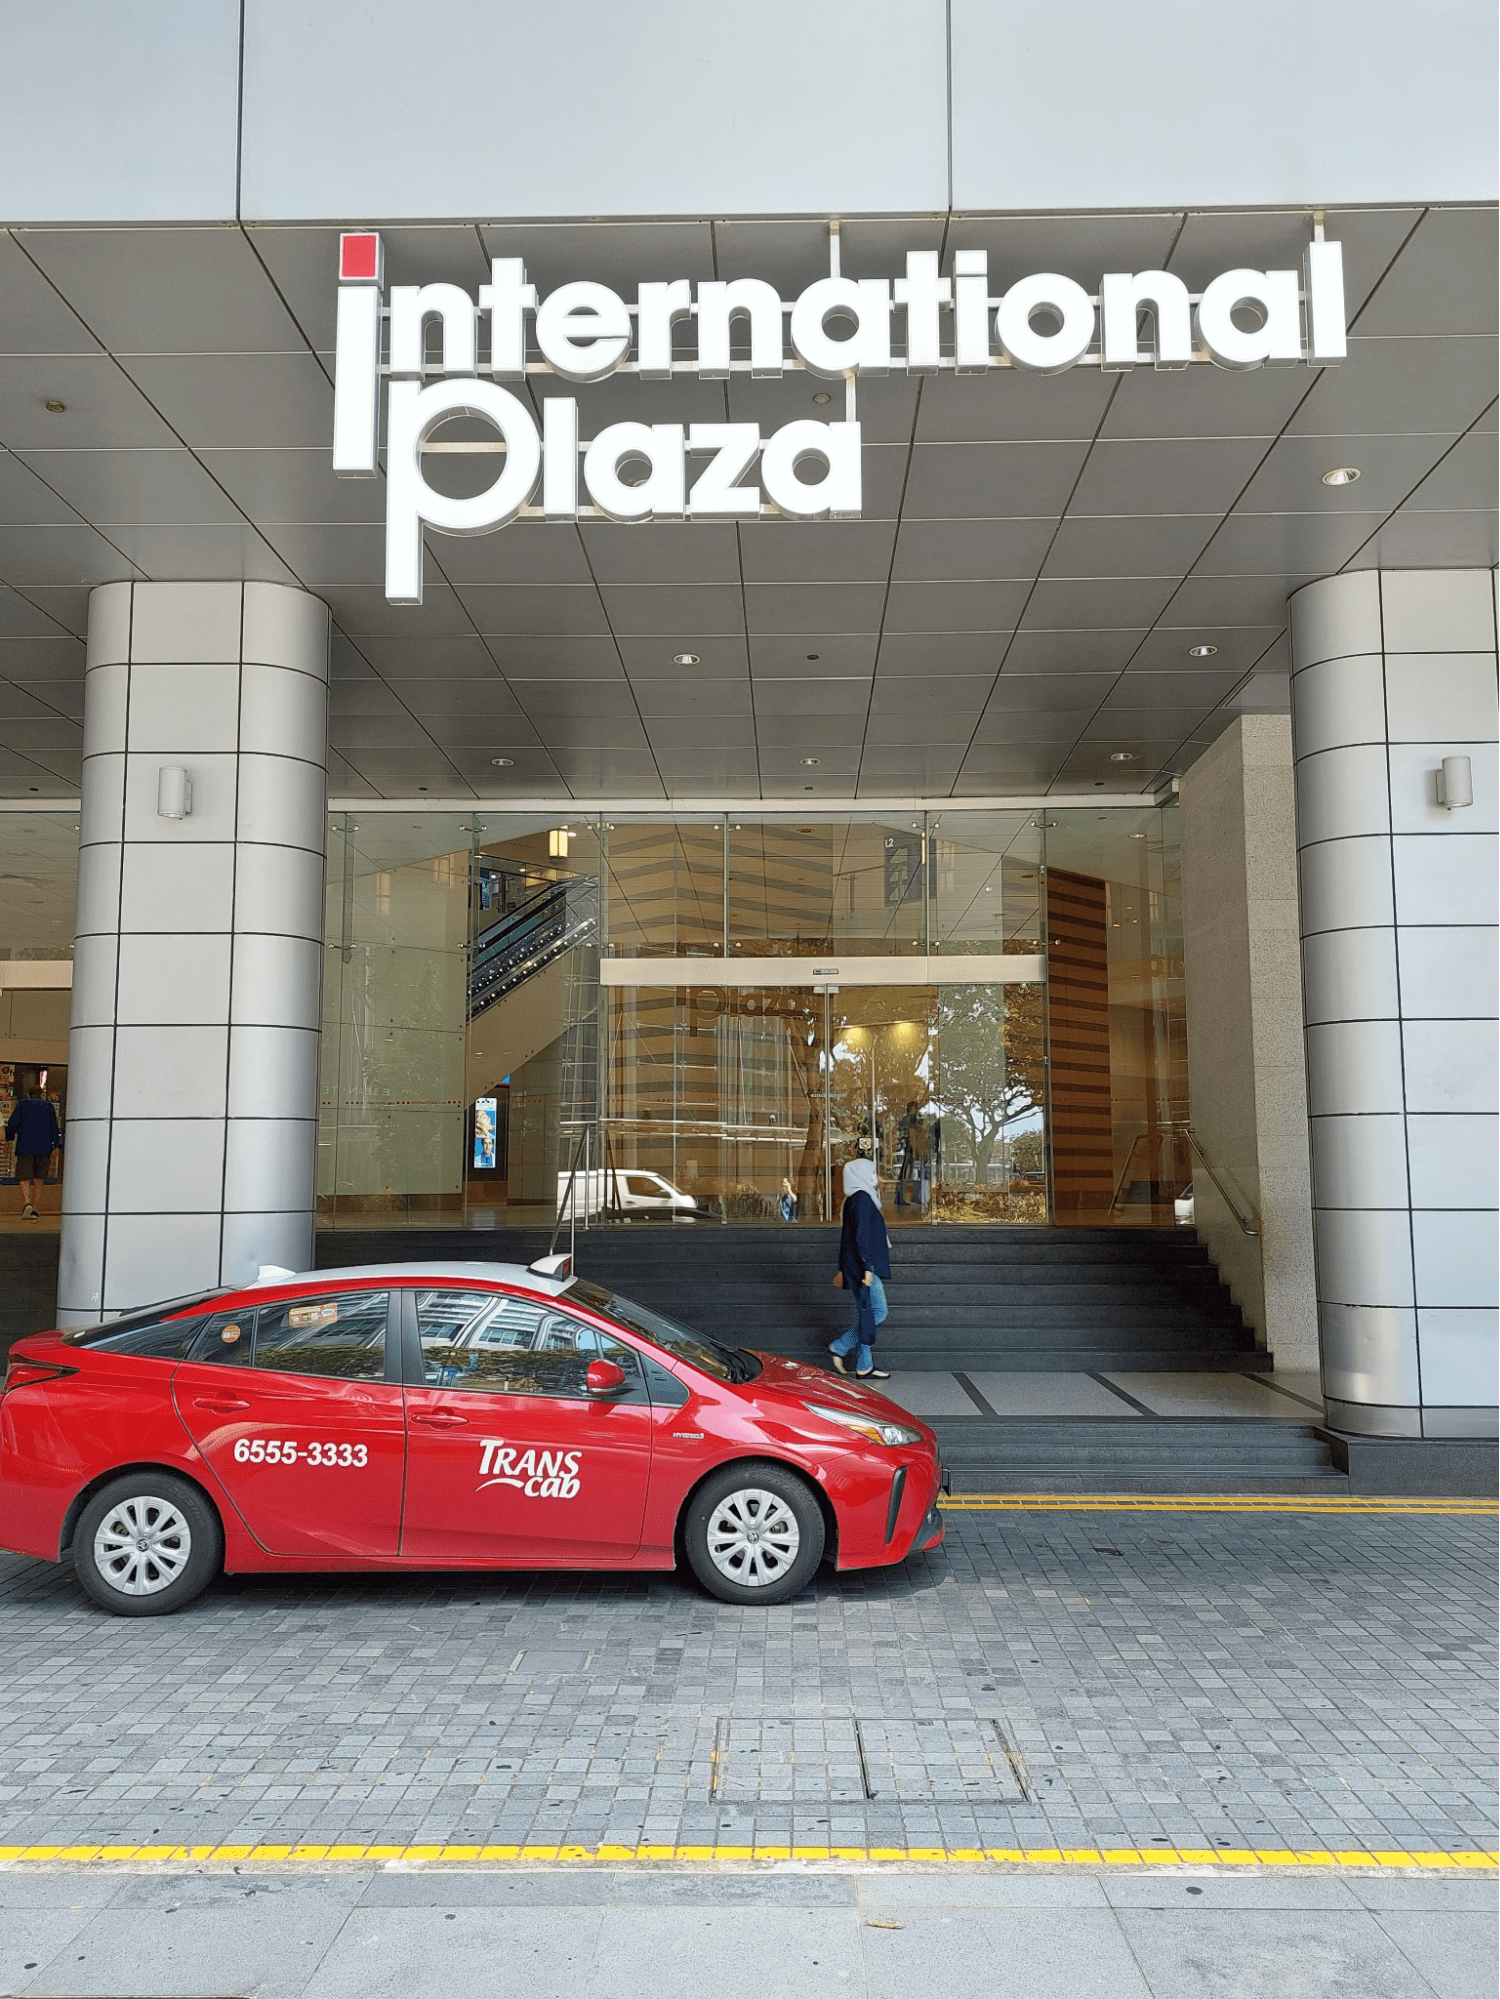 international plaza signage 